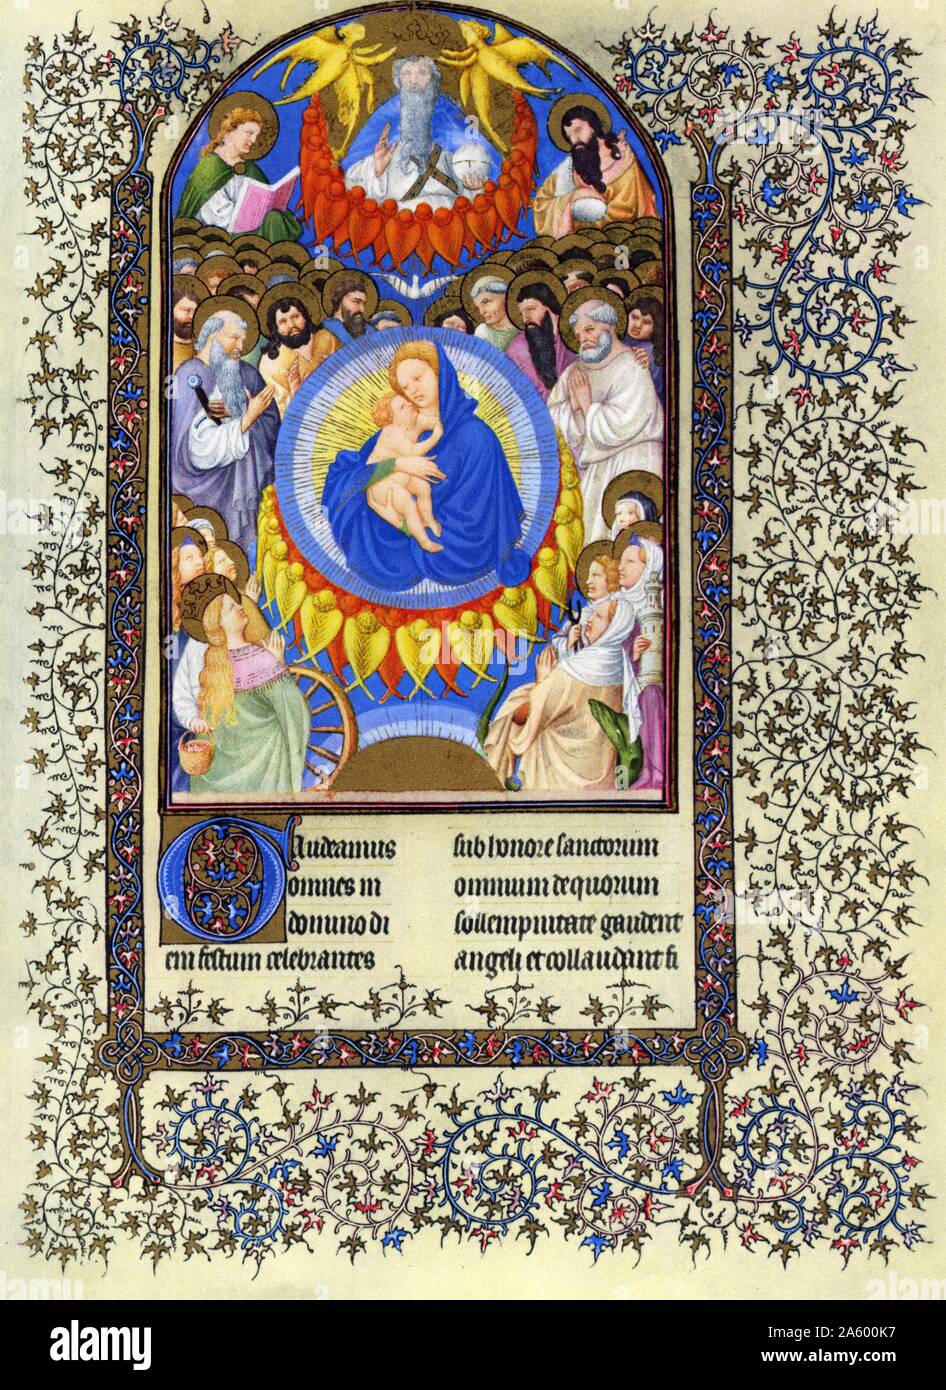 Darstellung der Court of Heaven von Belles Heures von Jean de France, Duc de Berry (schöne Stunden) eine frühe 15. Jahrhundert illuminierte Handschrift Buch von Stunden Beleuchtung. Vom 15. Jahrhundert Stockfoto